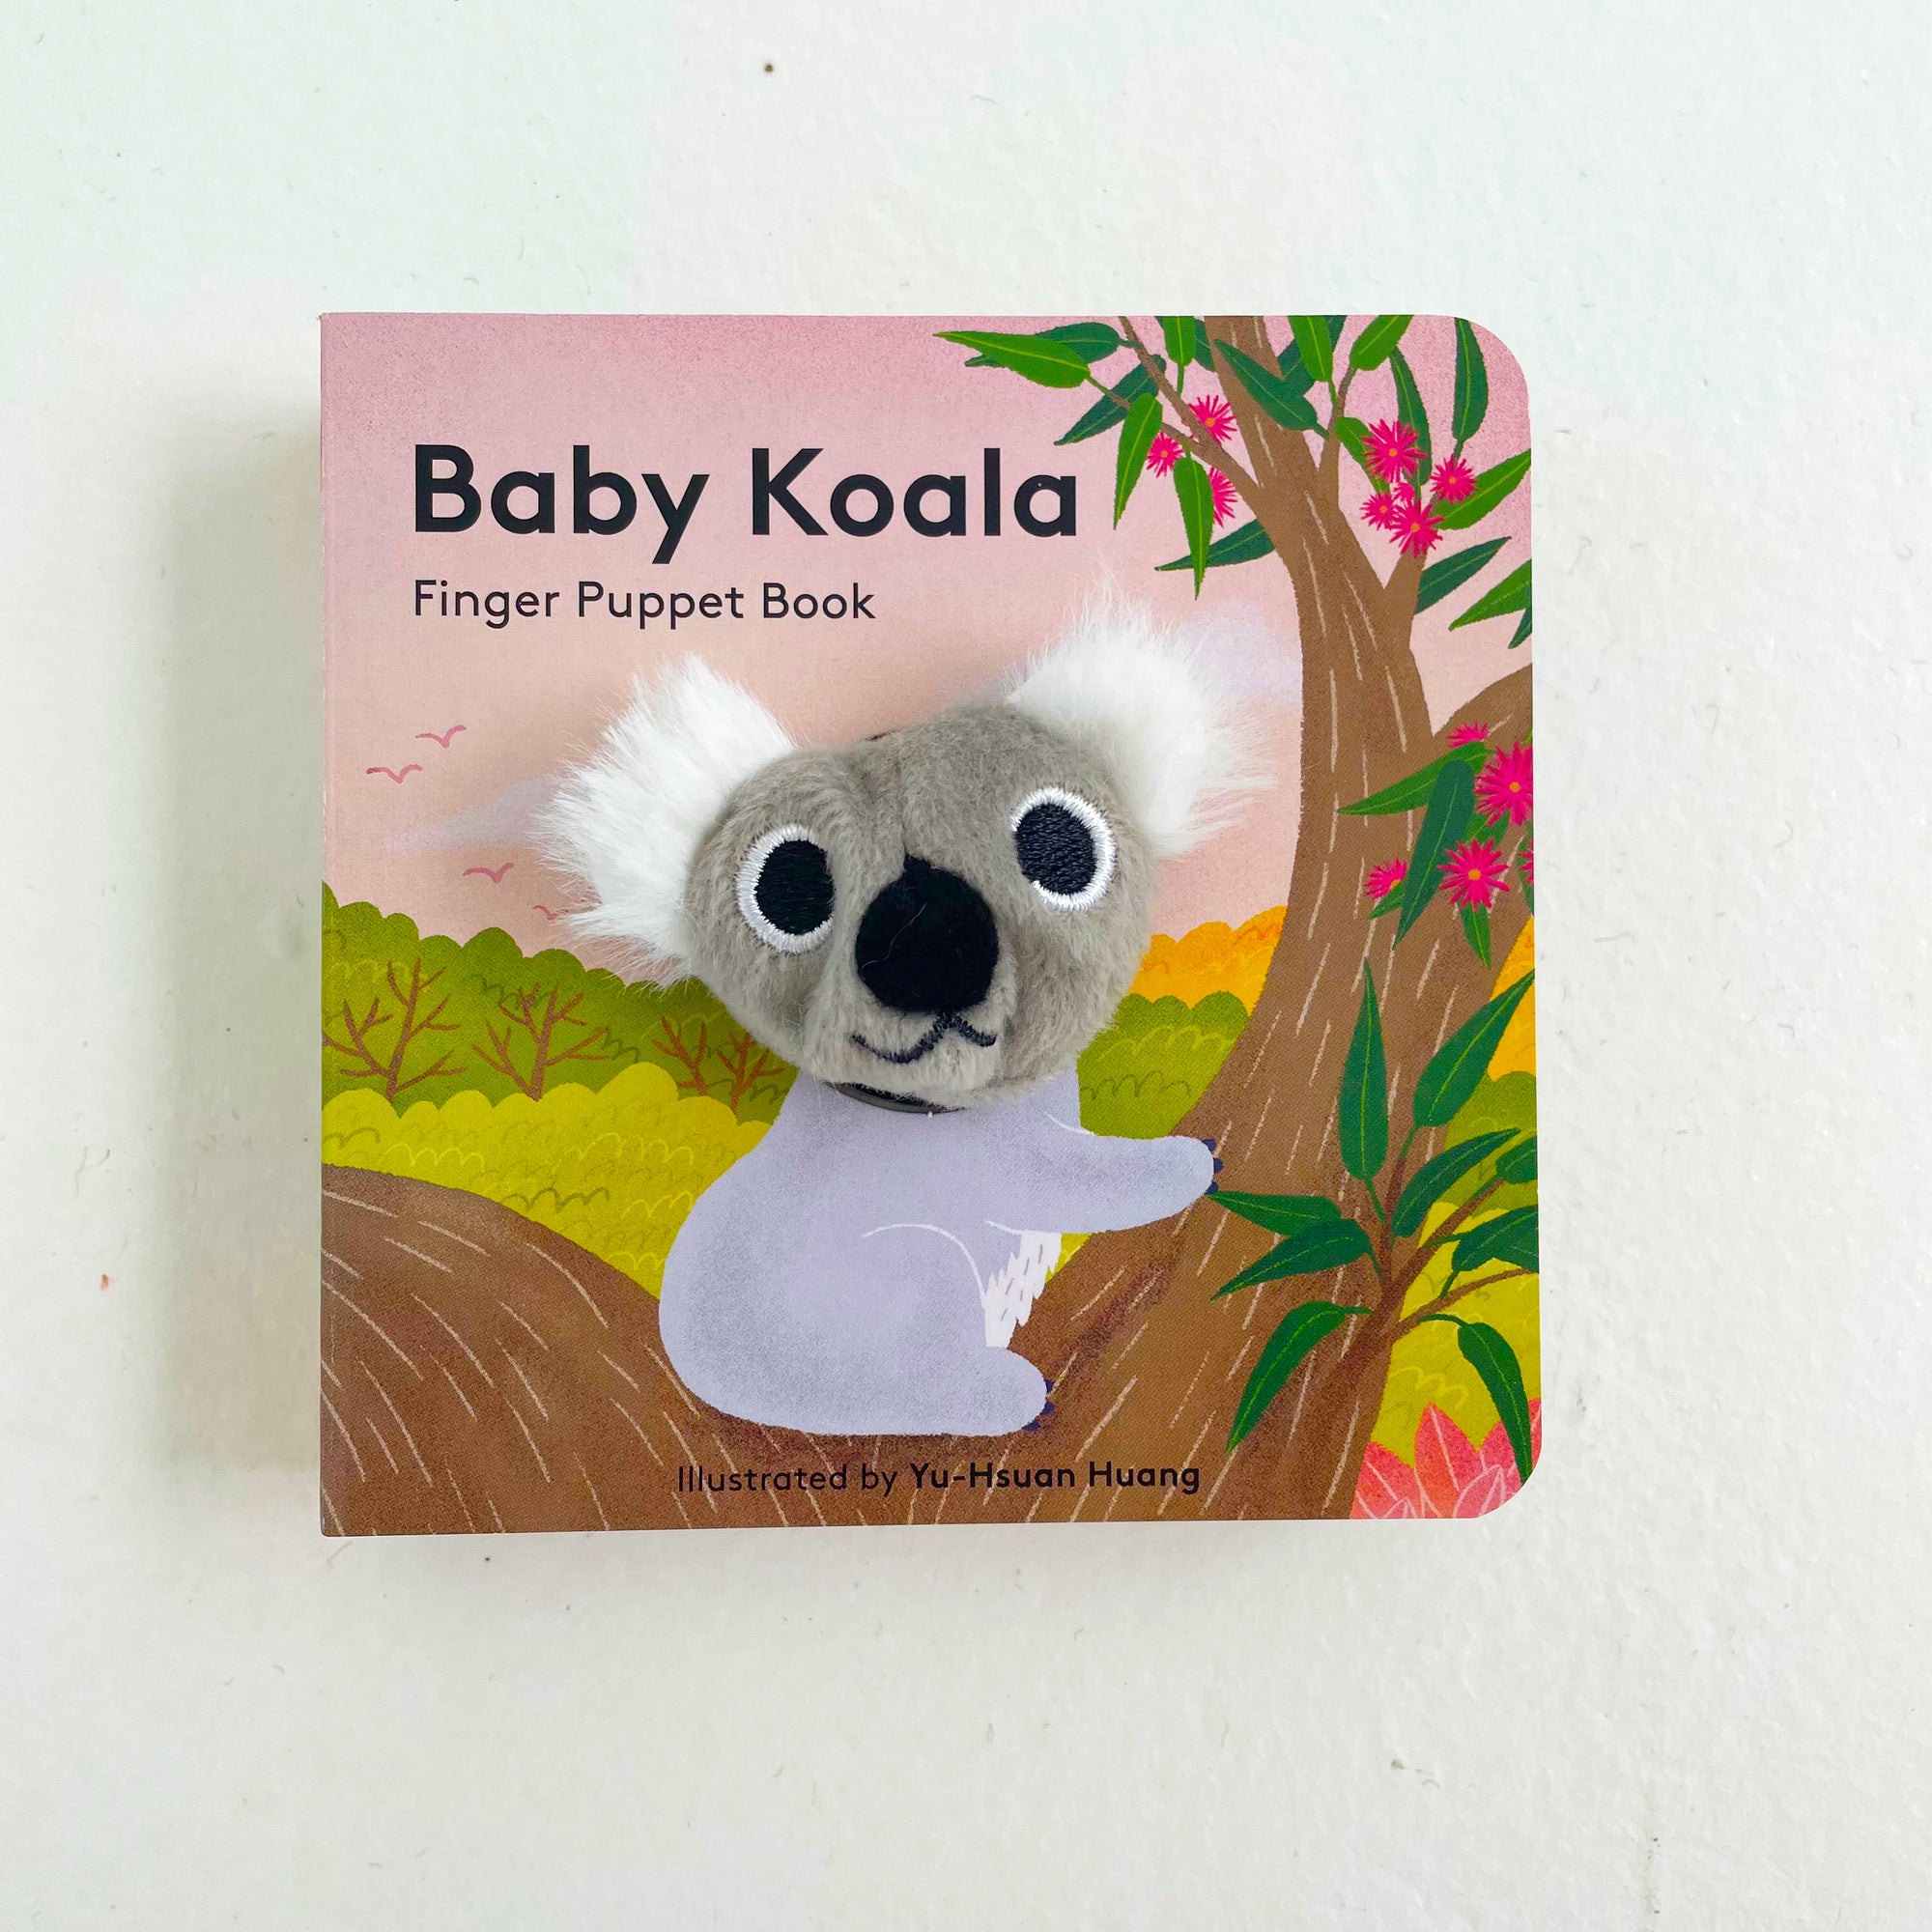 BABY KOALA: FINGER PUPPET BOOK